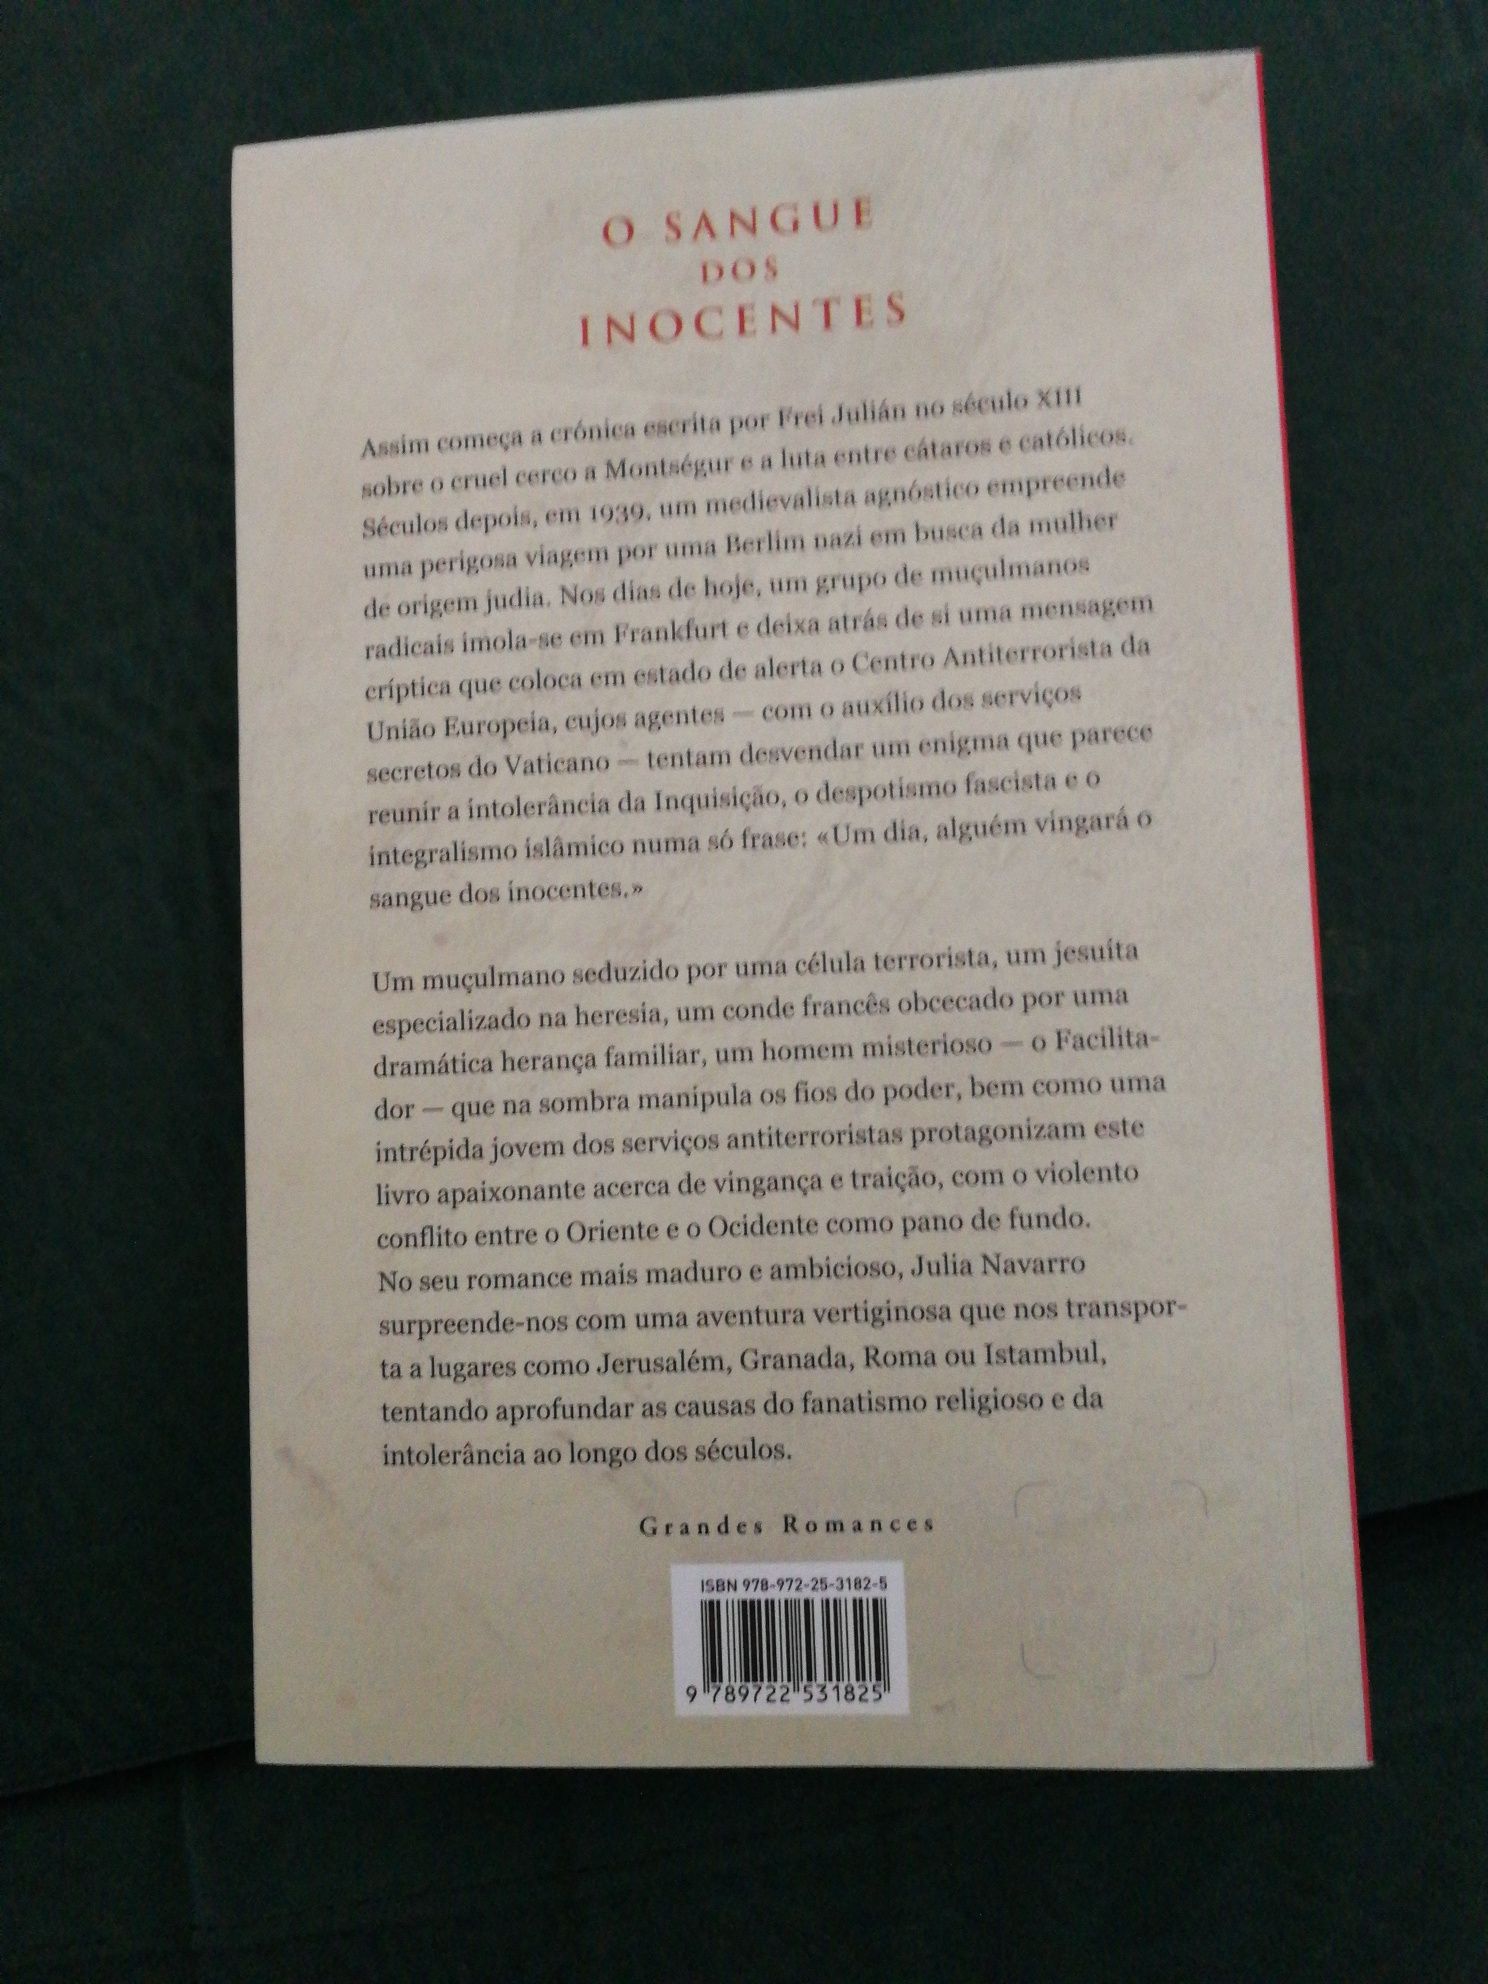 Livro "O Sangue dos Inocentes" de Julia Navarro